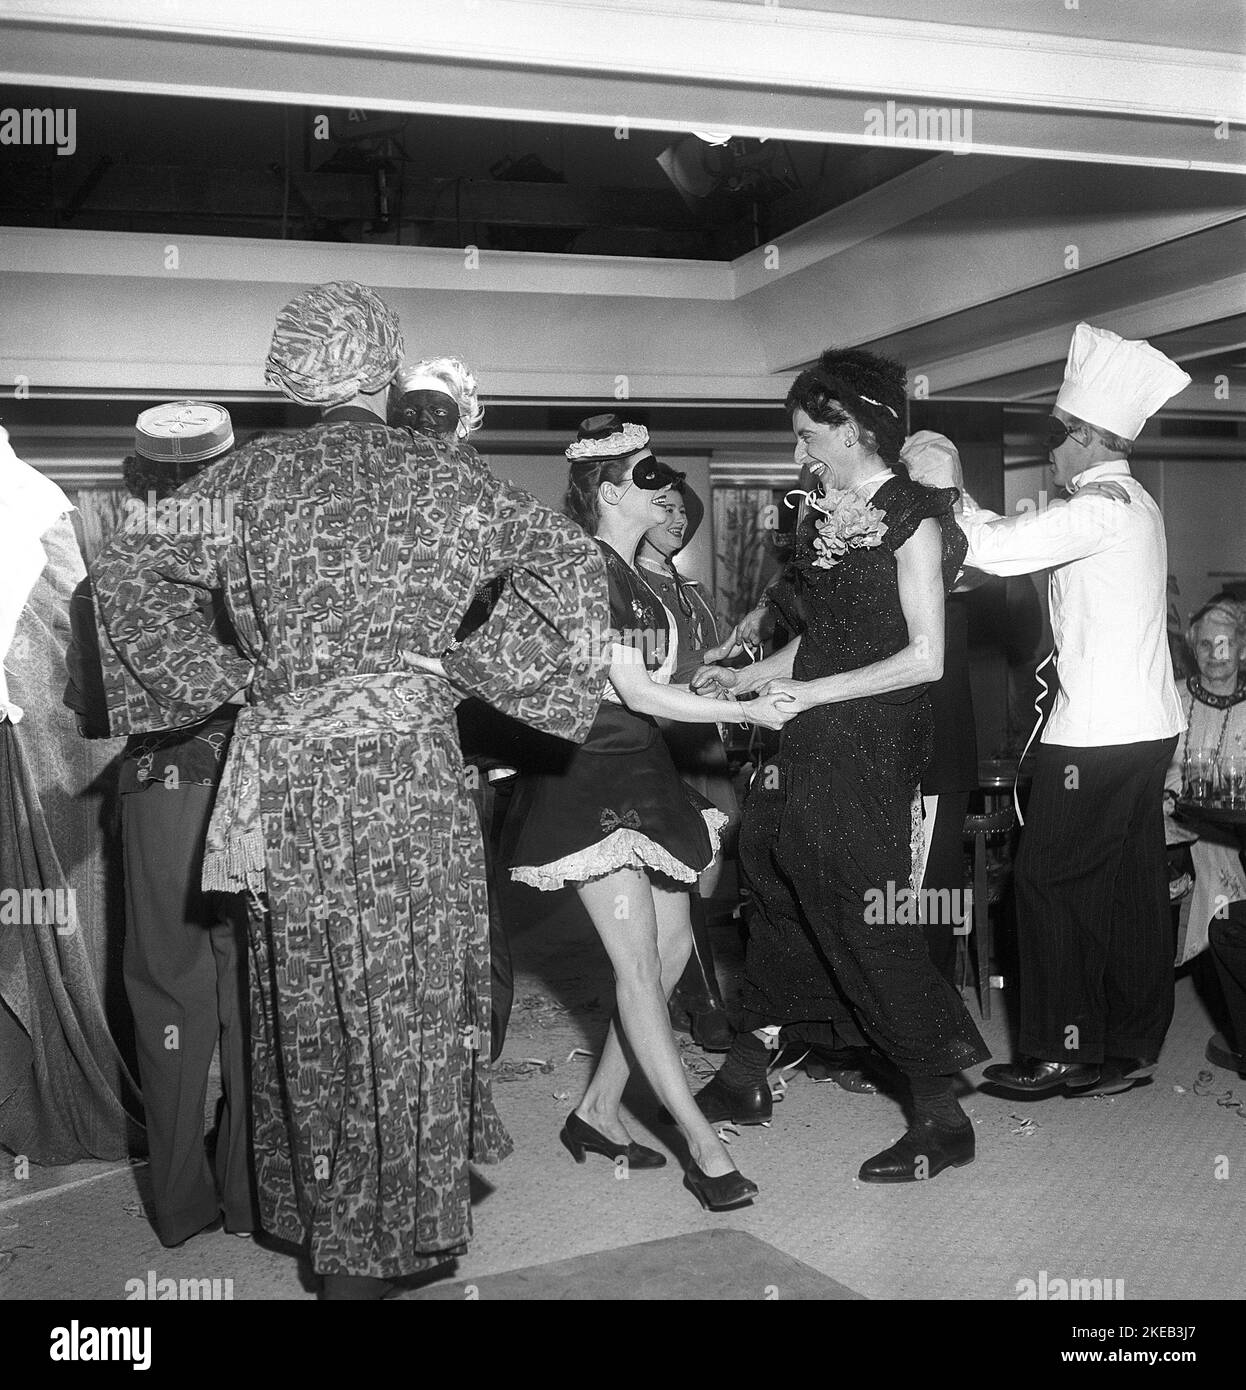 Tanzen in der 1950s. Tanzt bei einer Maskerade, fröhliche Leute, die sich für die Gelegenheit verkleidet haben. Schweden 1950 Ref. Kristoffersson AX55-11 Stockfoto